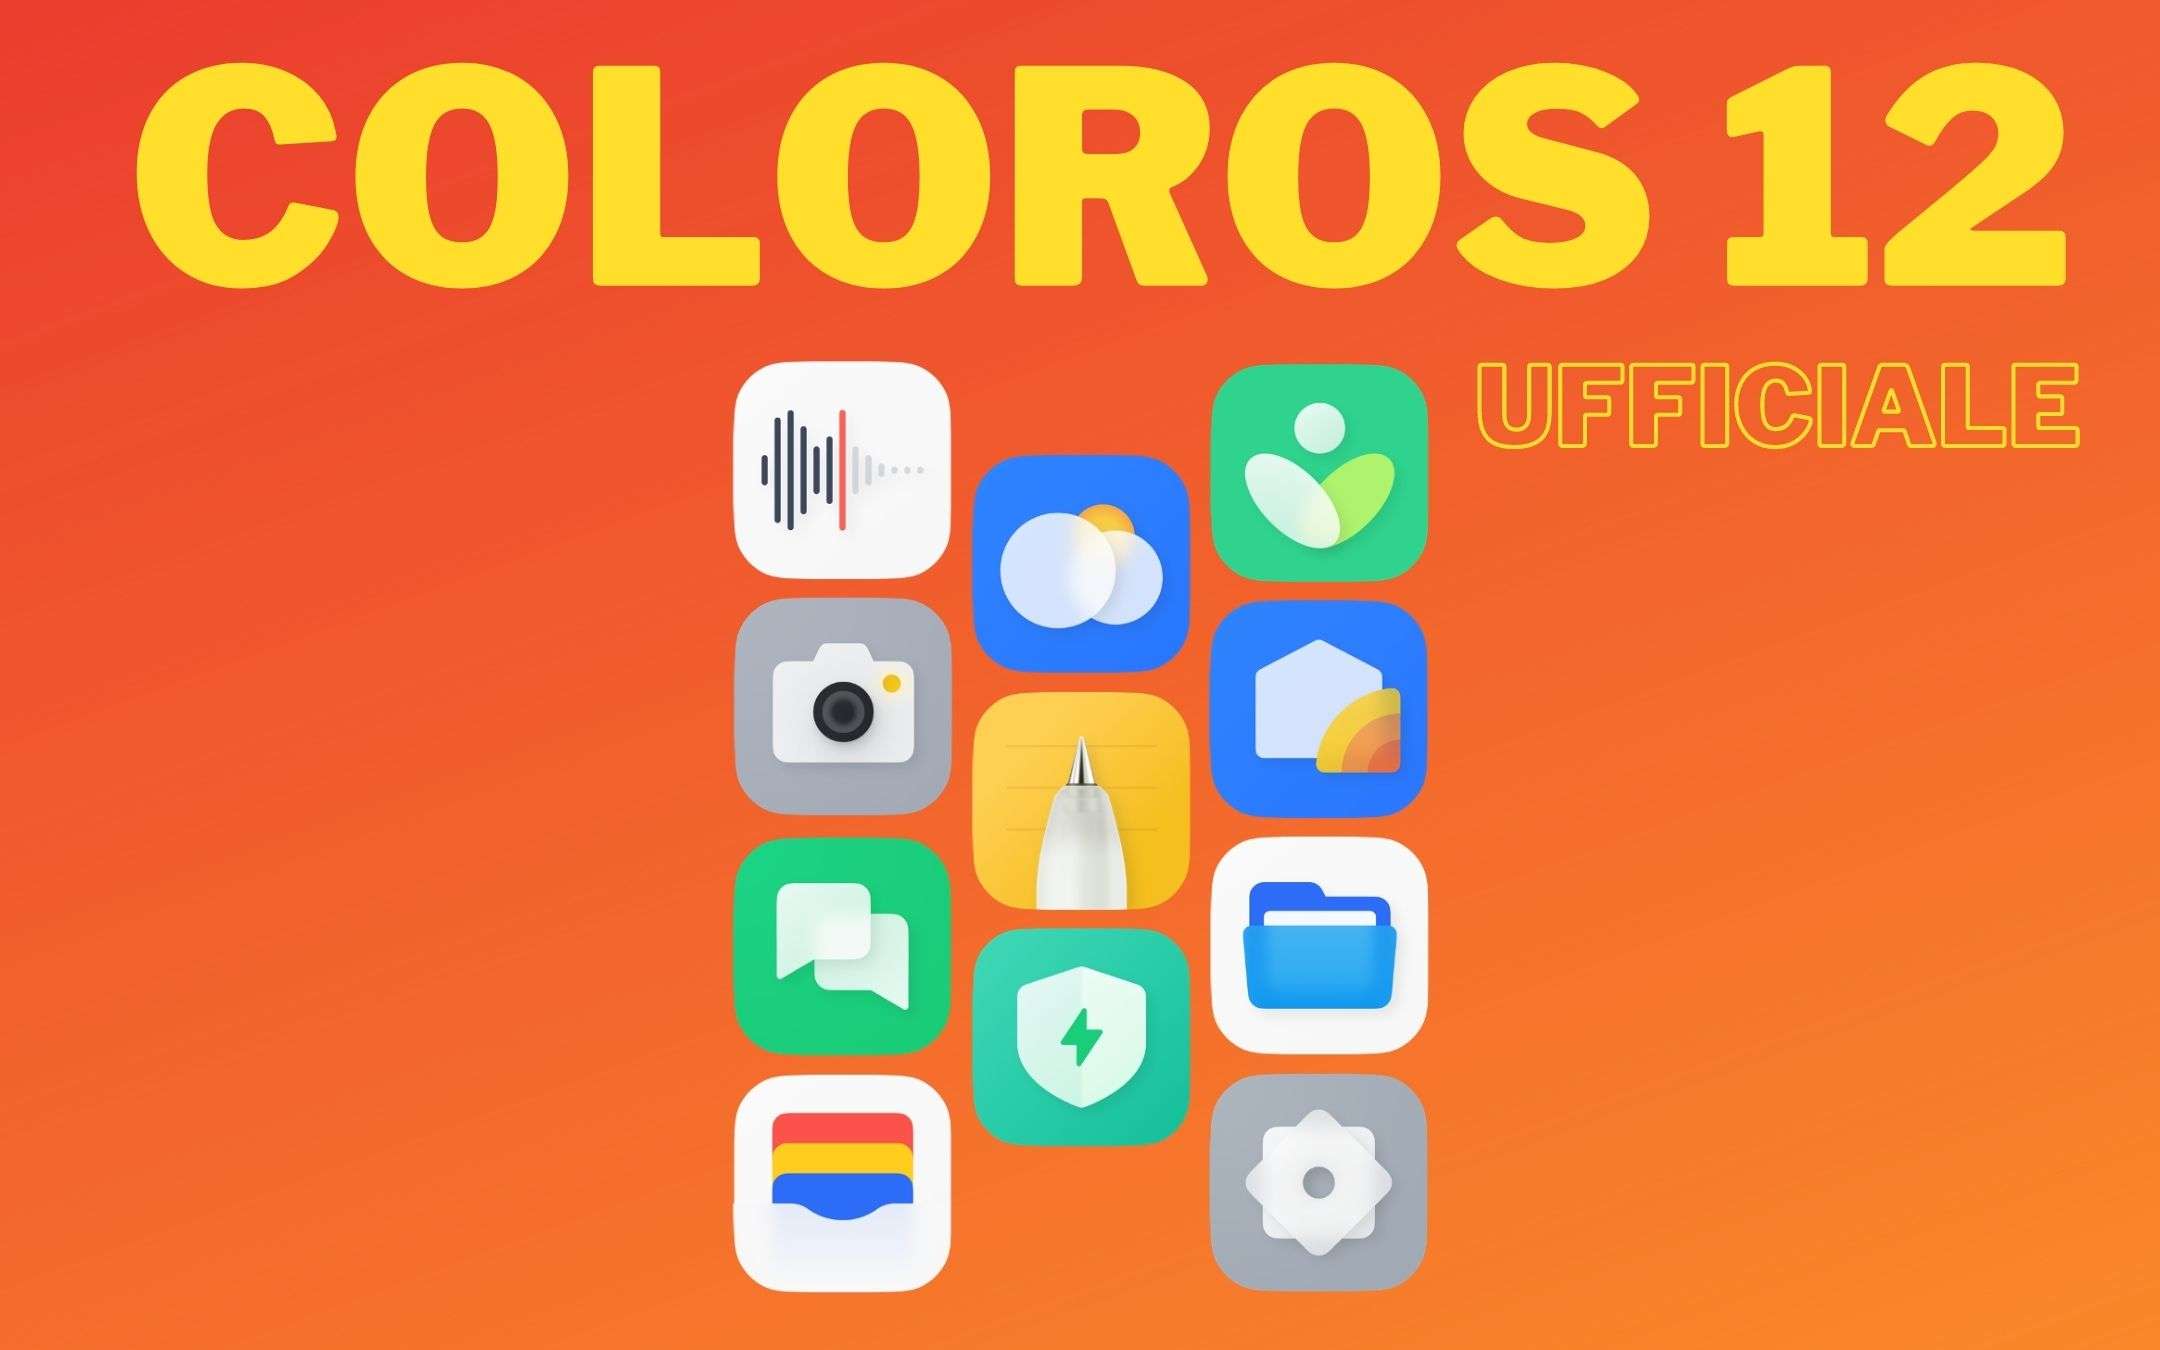 OPPO annuncia la ColorOS 12 Global, UFFICIALE